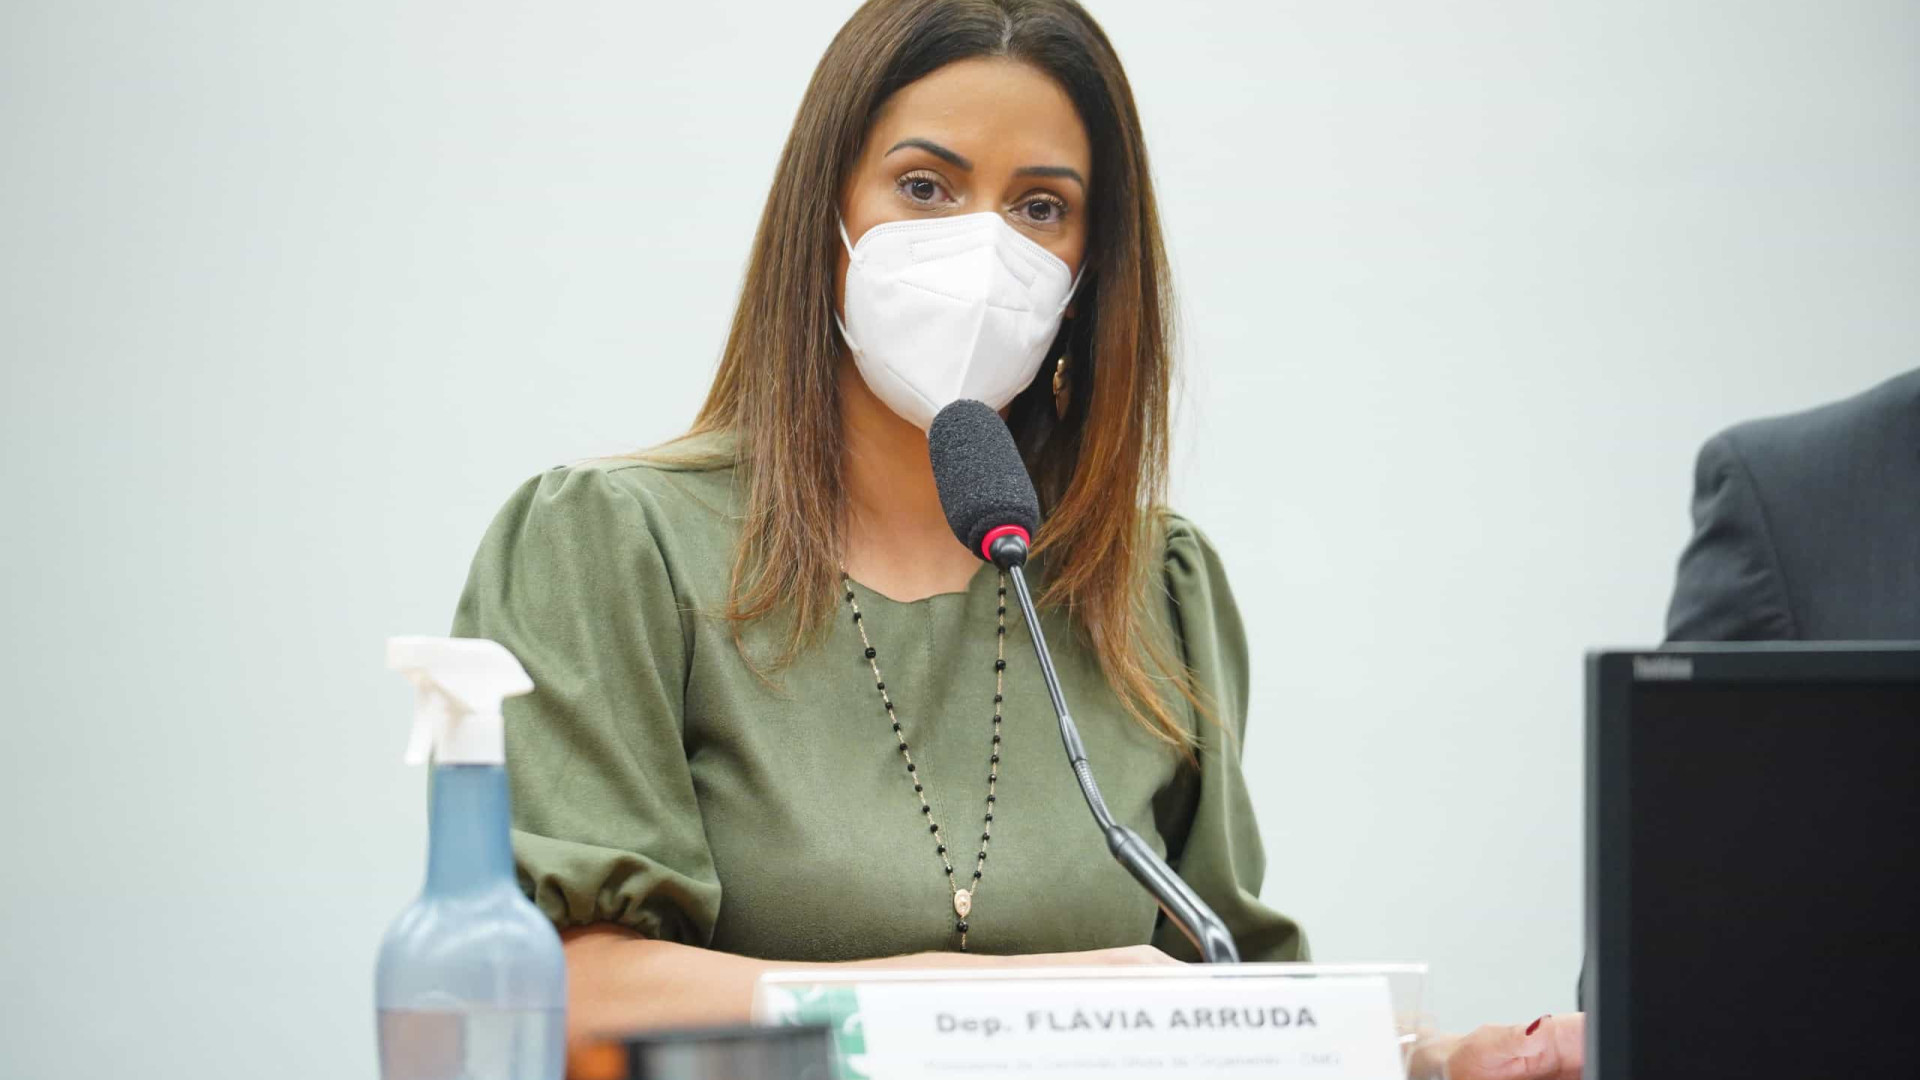 Flavia Arruda é afastada do governo para tratar de 'assuntos particulares'